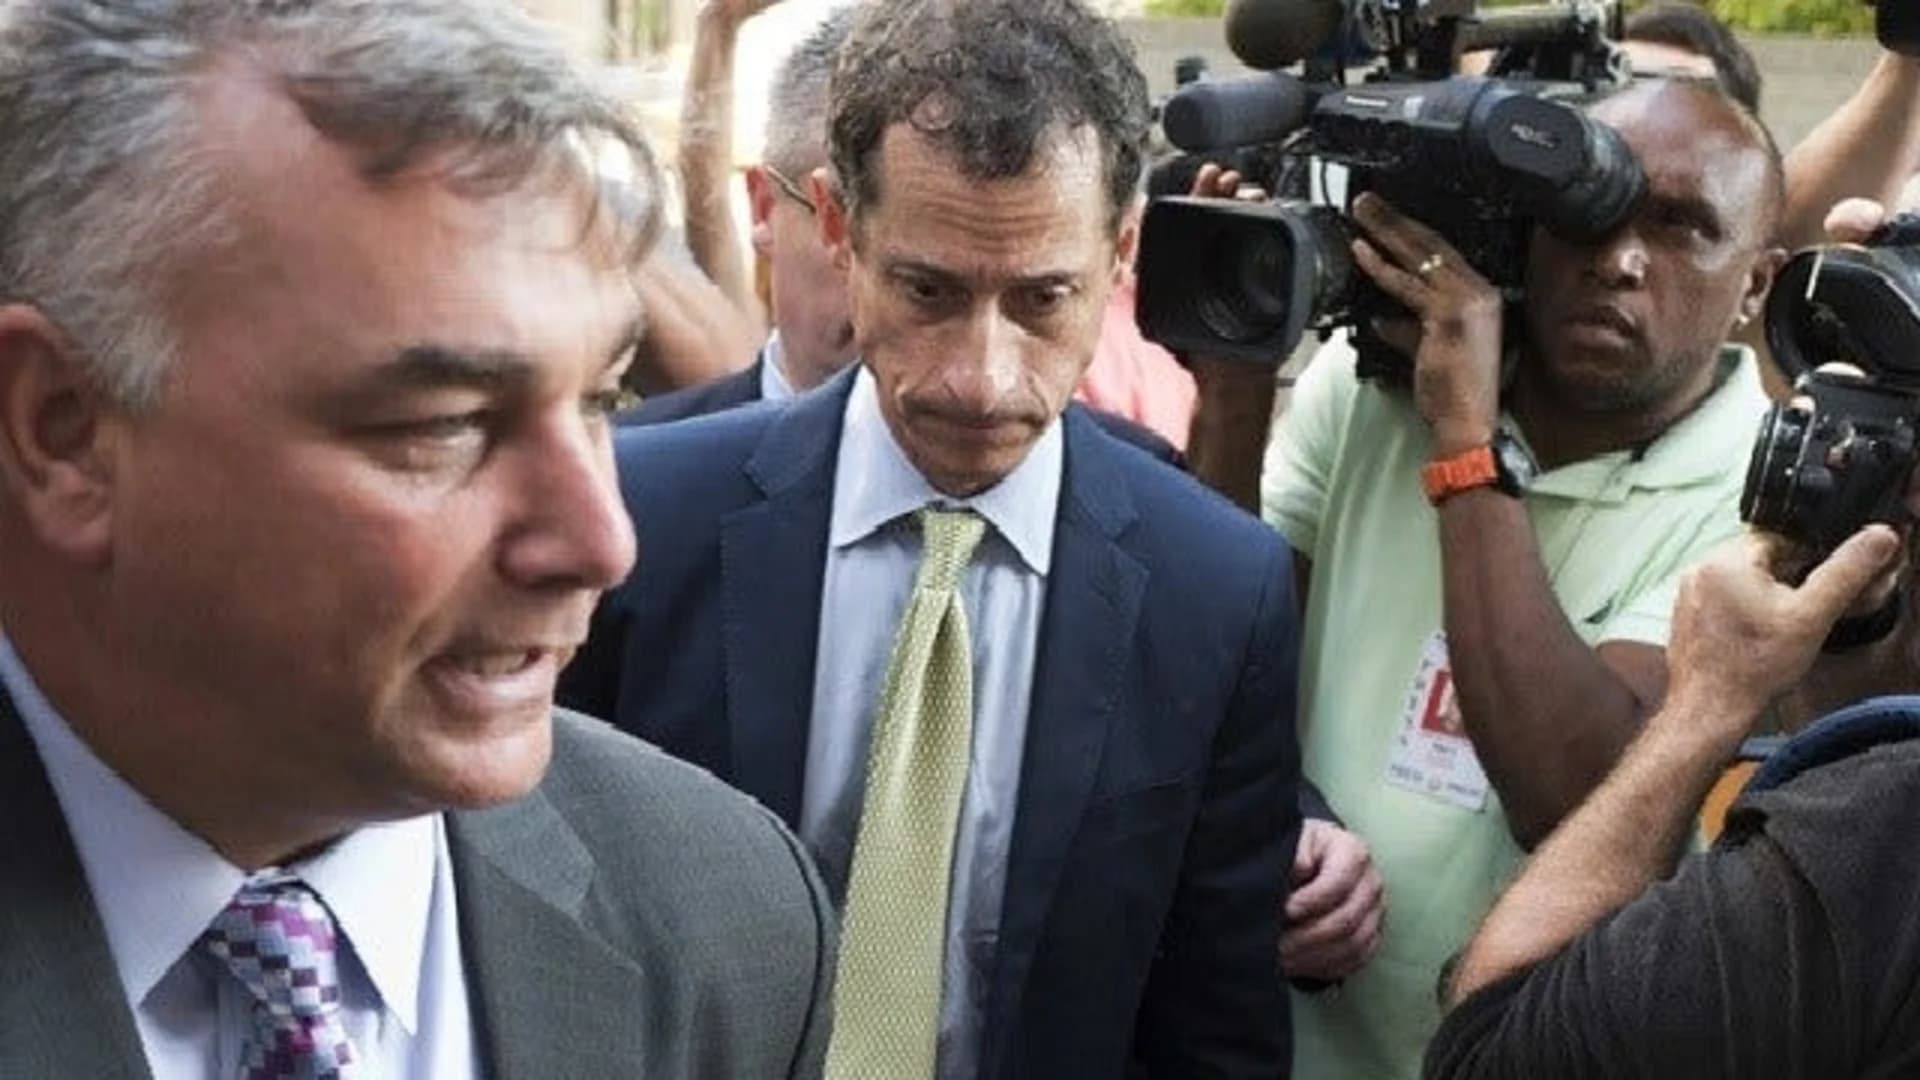 Anthony Weiner starts 21-month prison sentence